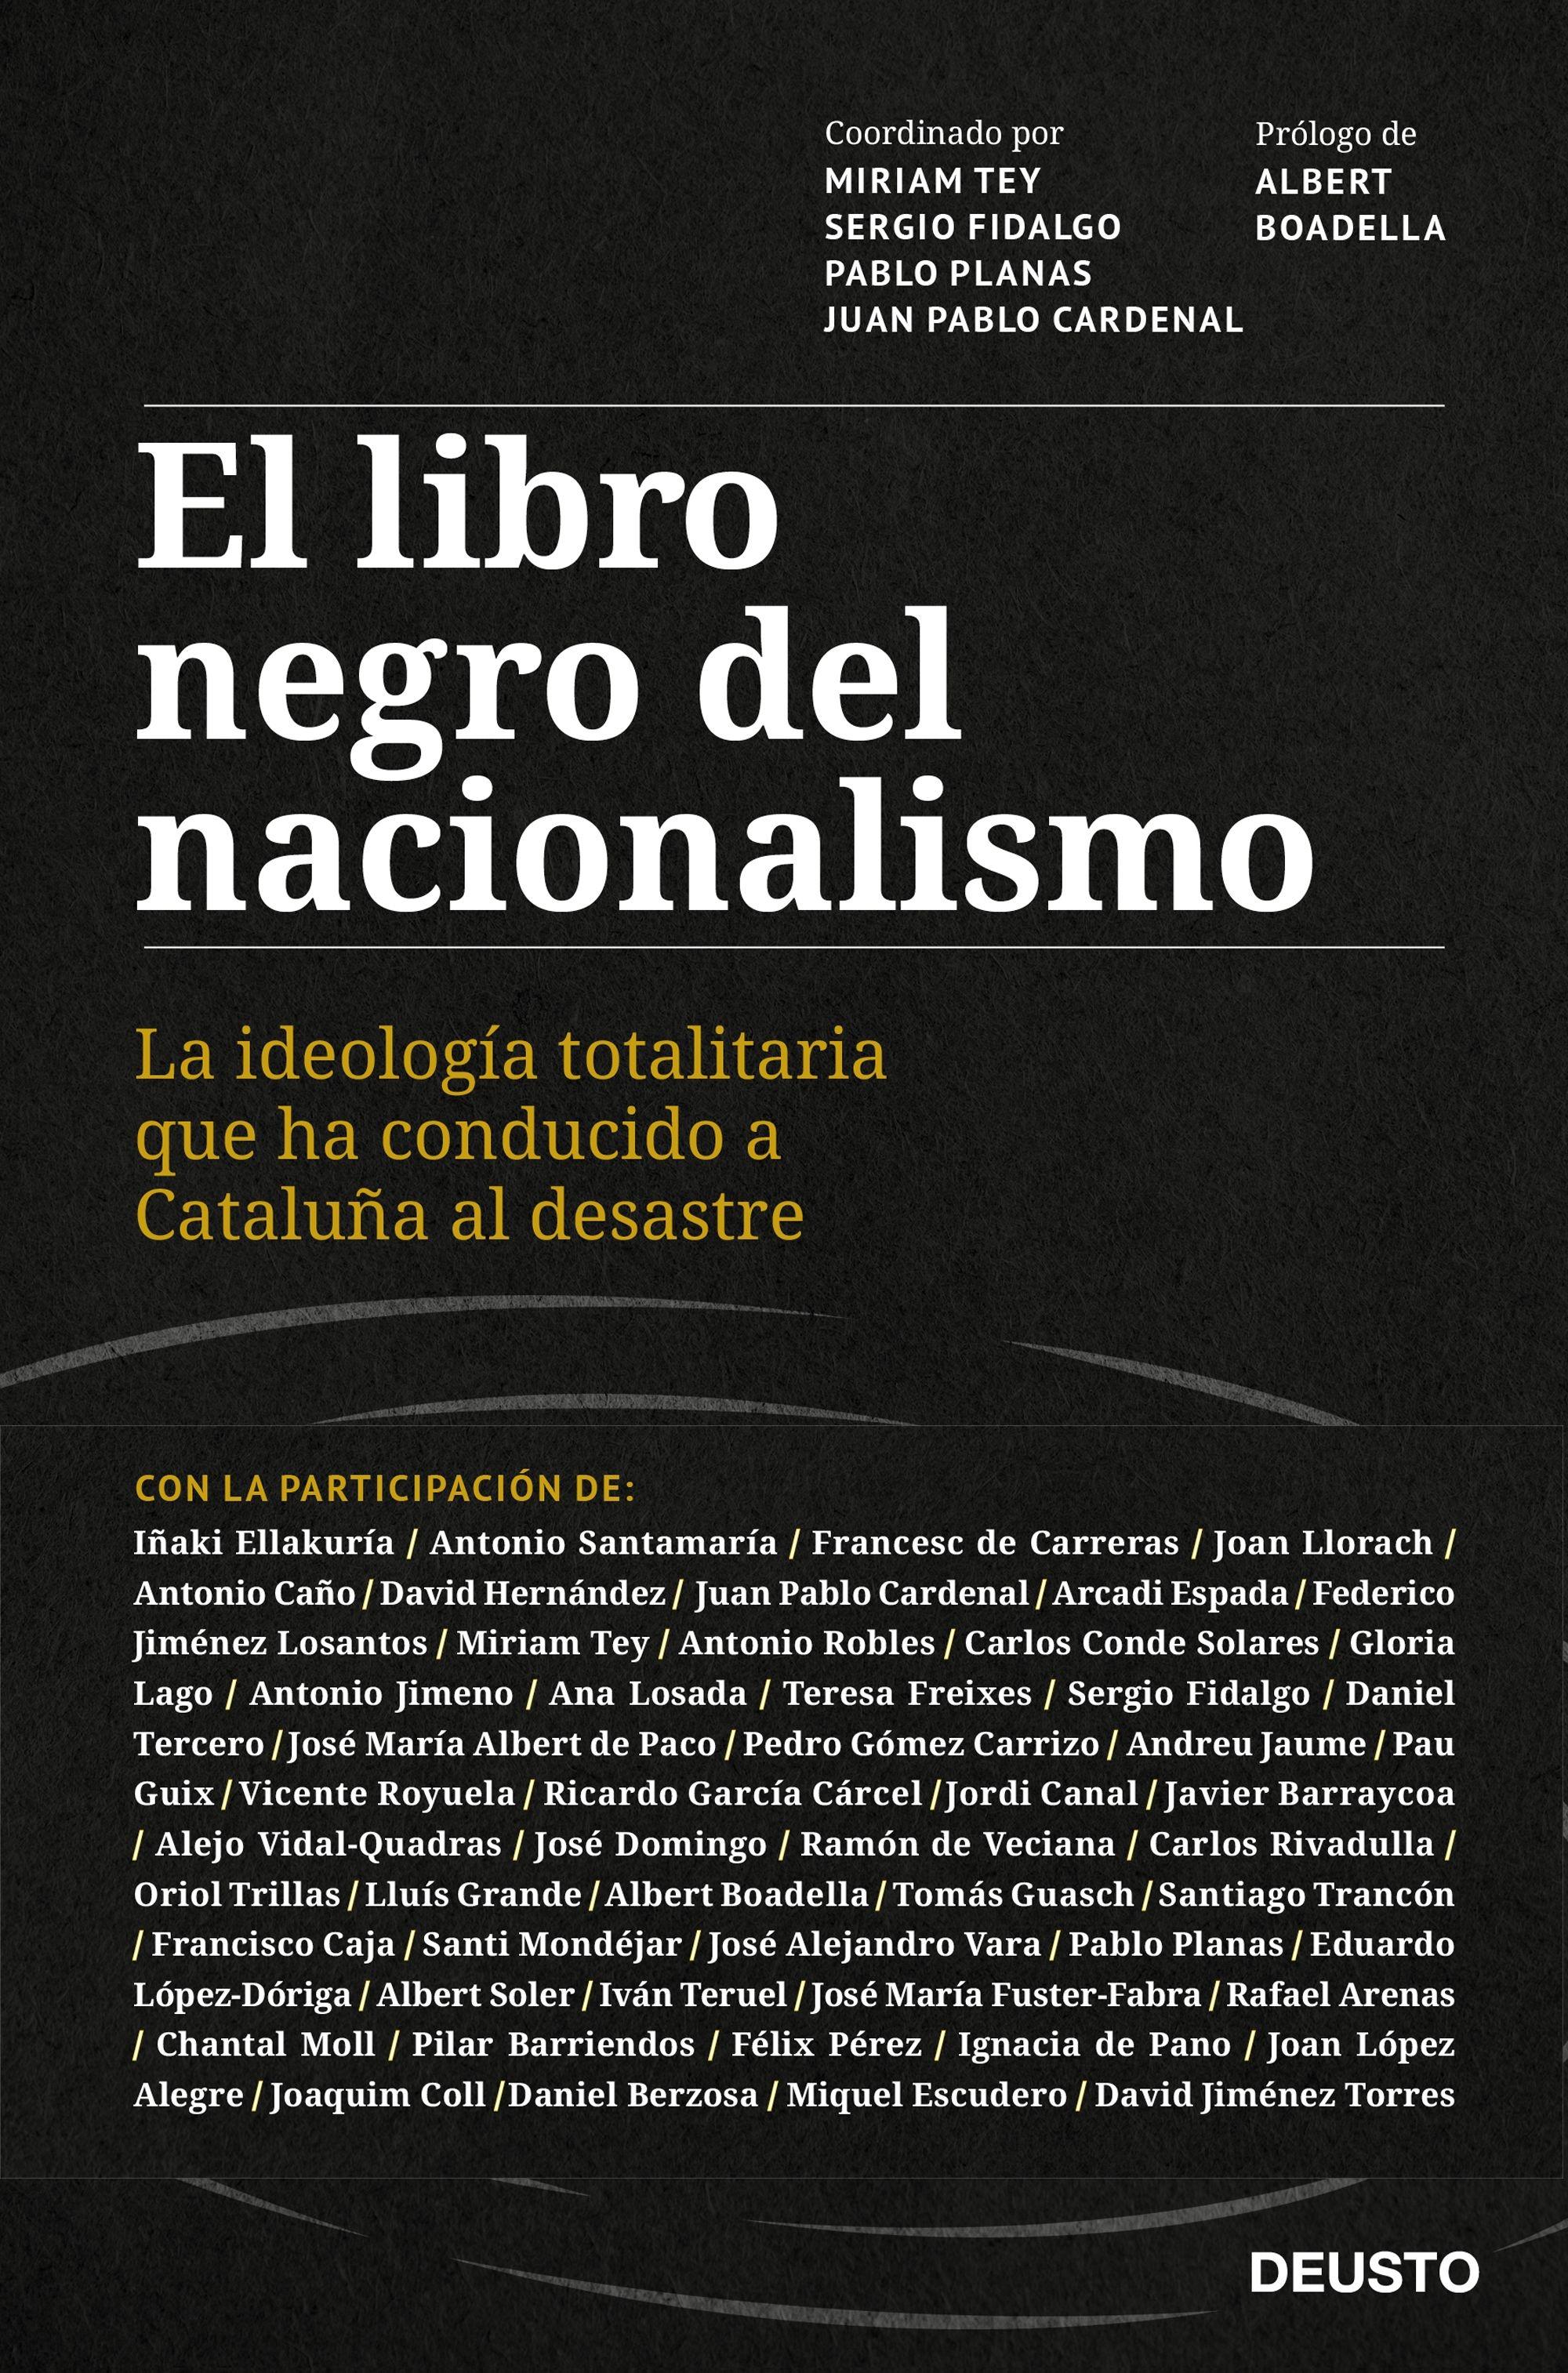 Libro negro del nacionalismo, El "La ideología totalitaria que ha conducido a Cataluña al desastre"